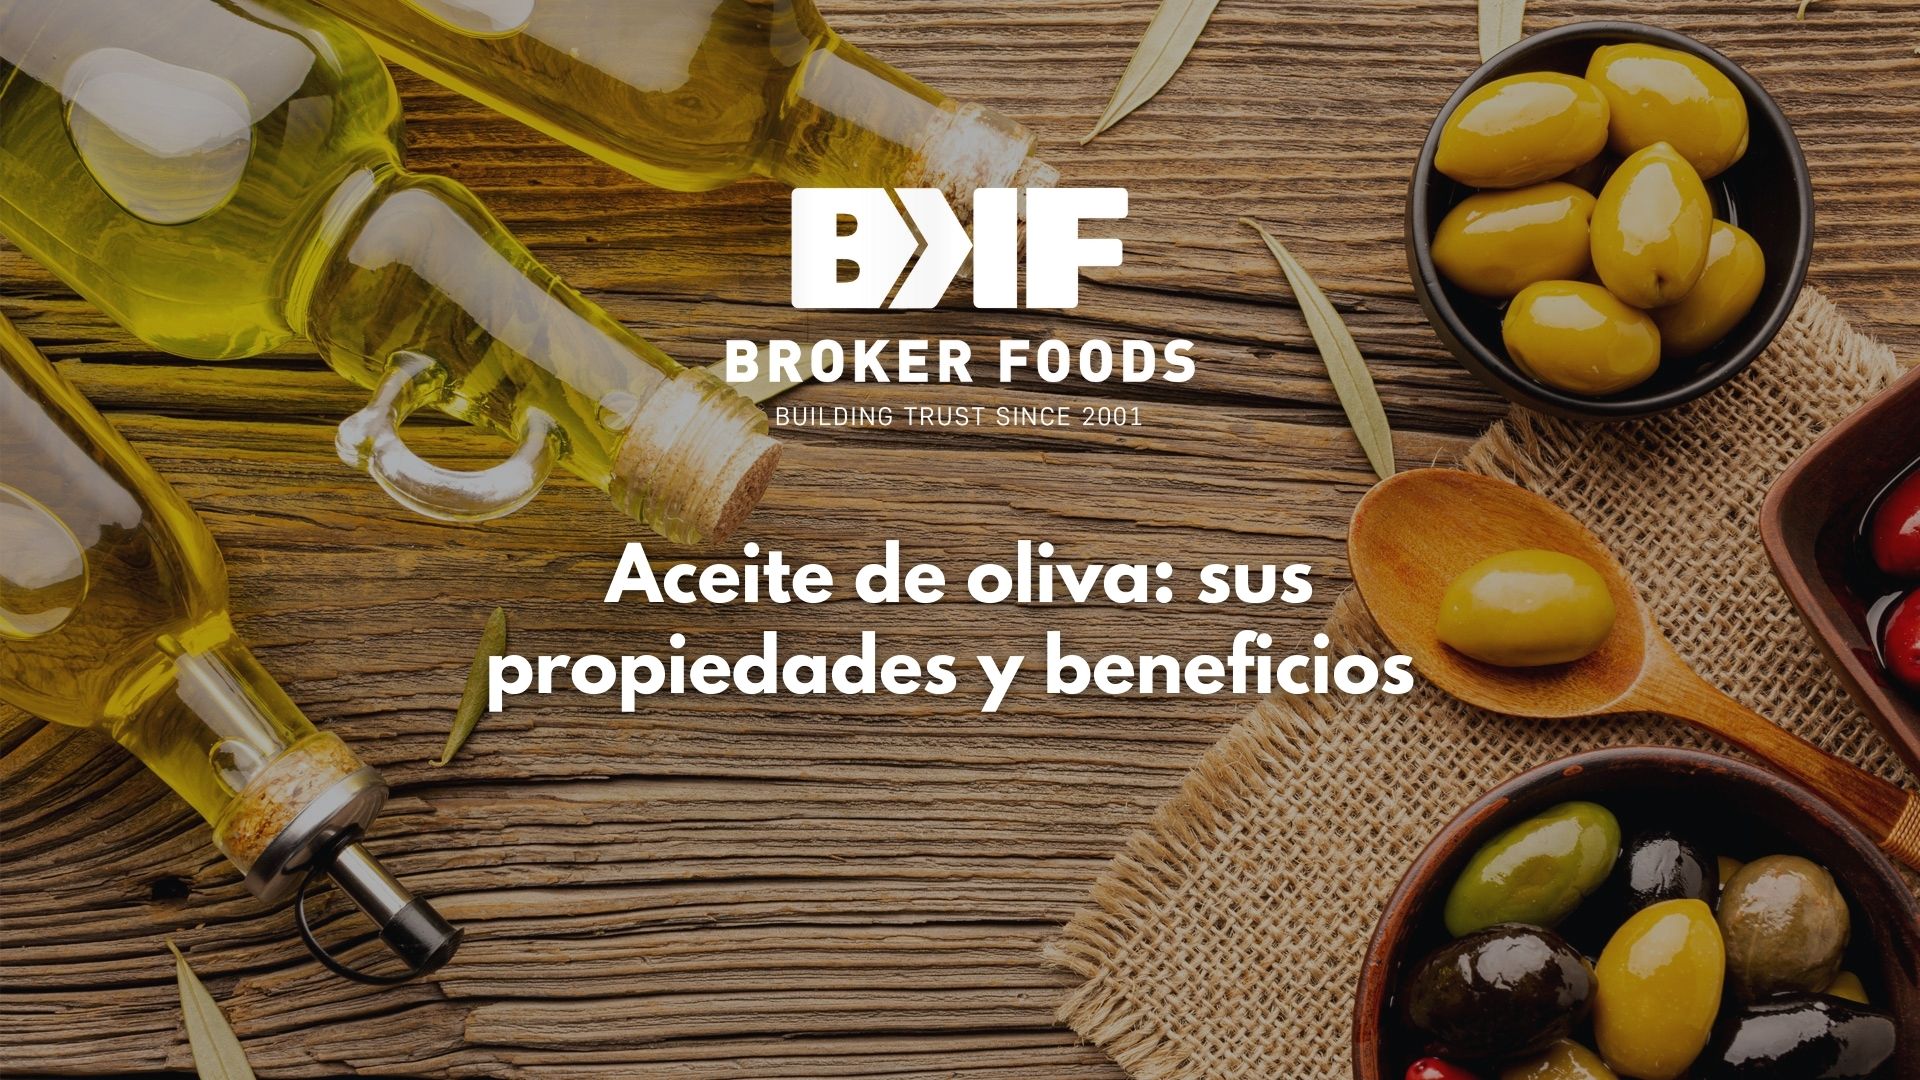 Broker Foods Aceite de Oliva: sus propiedades y beneficios